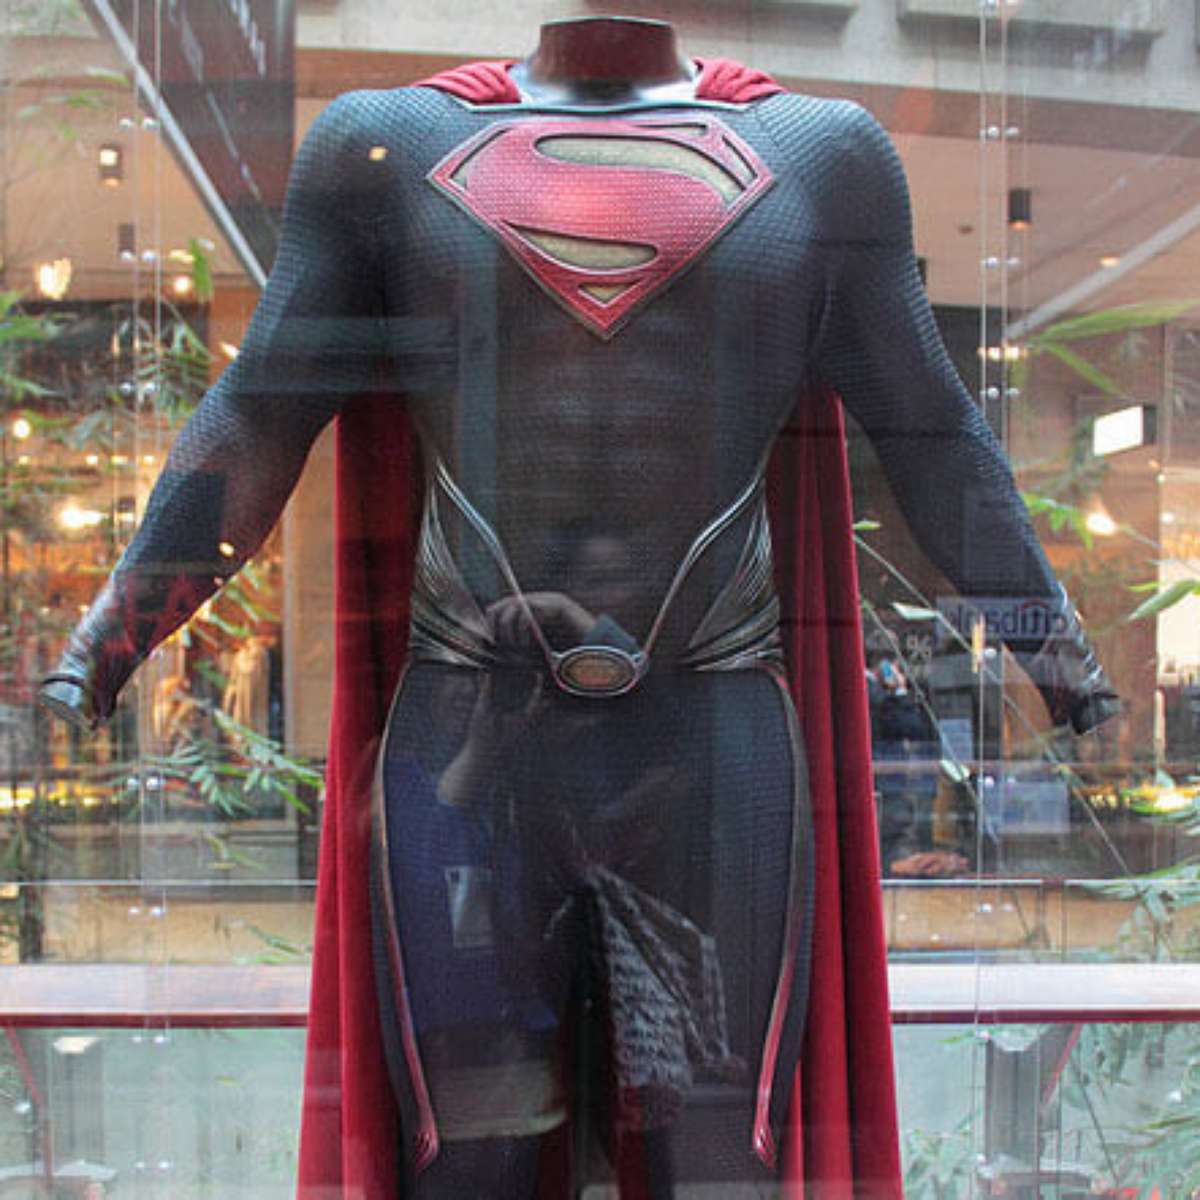 Henry Cavill abandona a capa de Super Homem